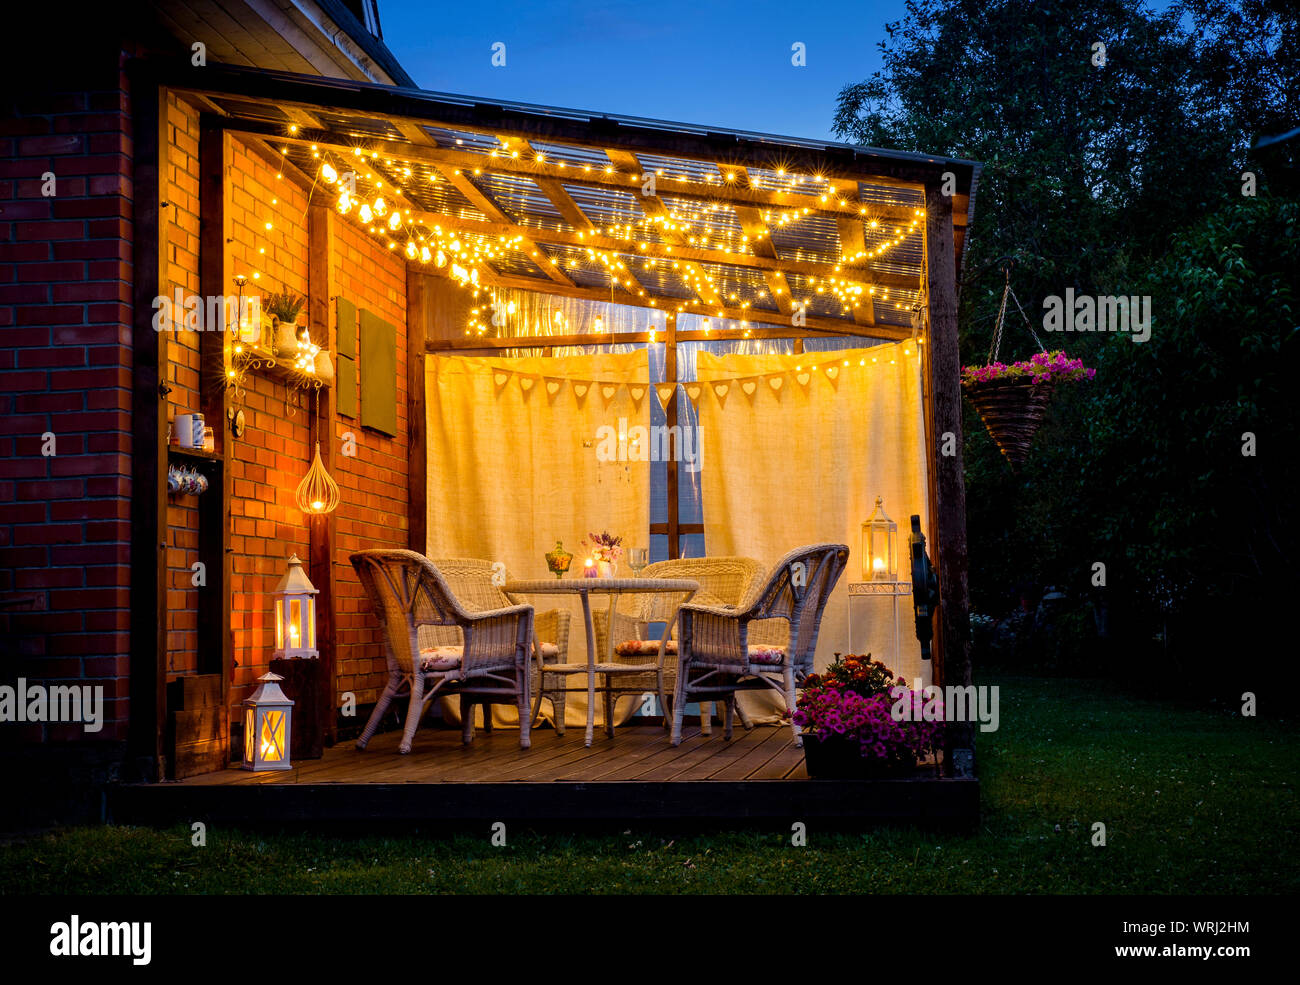 Vue sur piscine agréable terrasse avec table et chaises, éclairage blanc  très romantique, lanternes, bougies, lampes led string party et ampoules  Photo Stock - Alamy